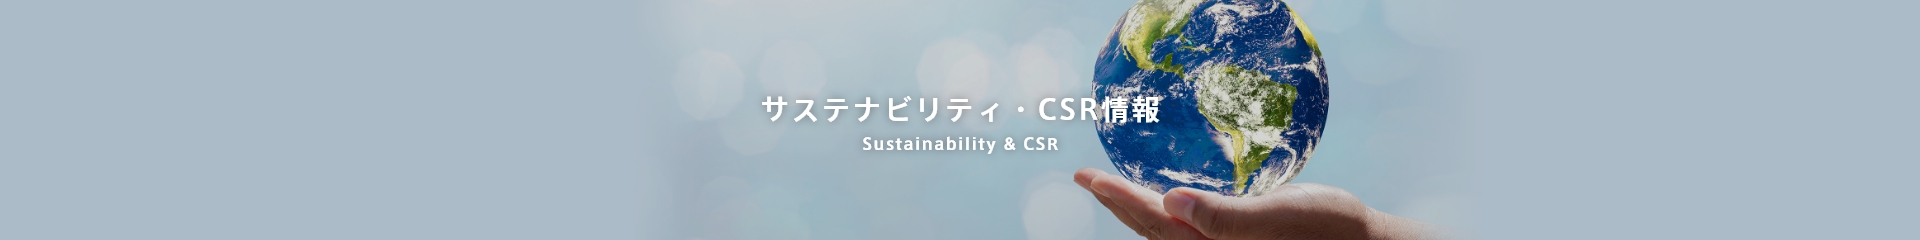 サステナビリティ・CSR情報